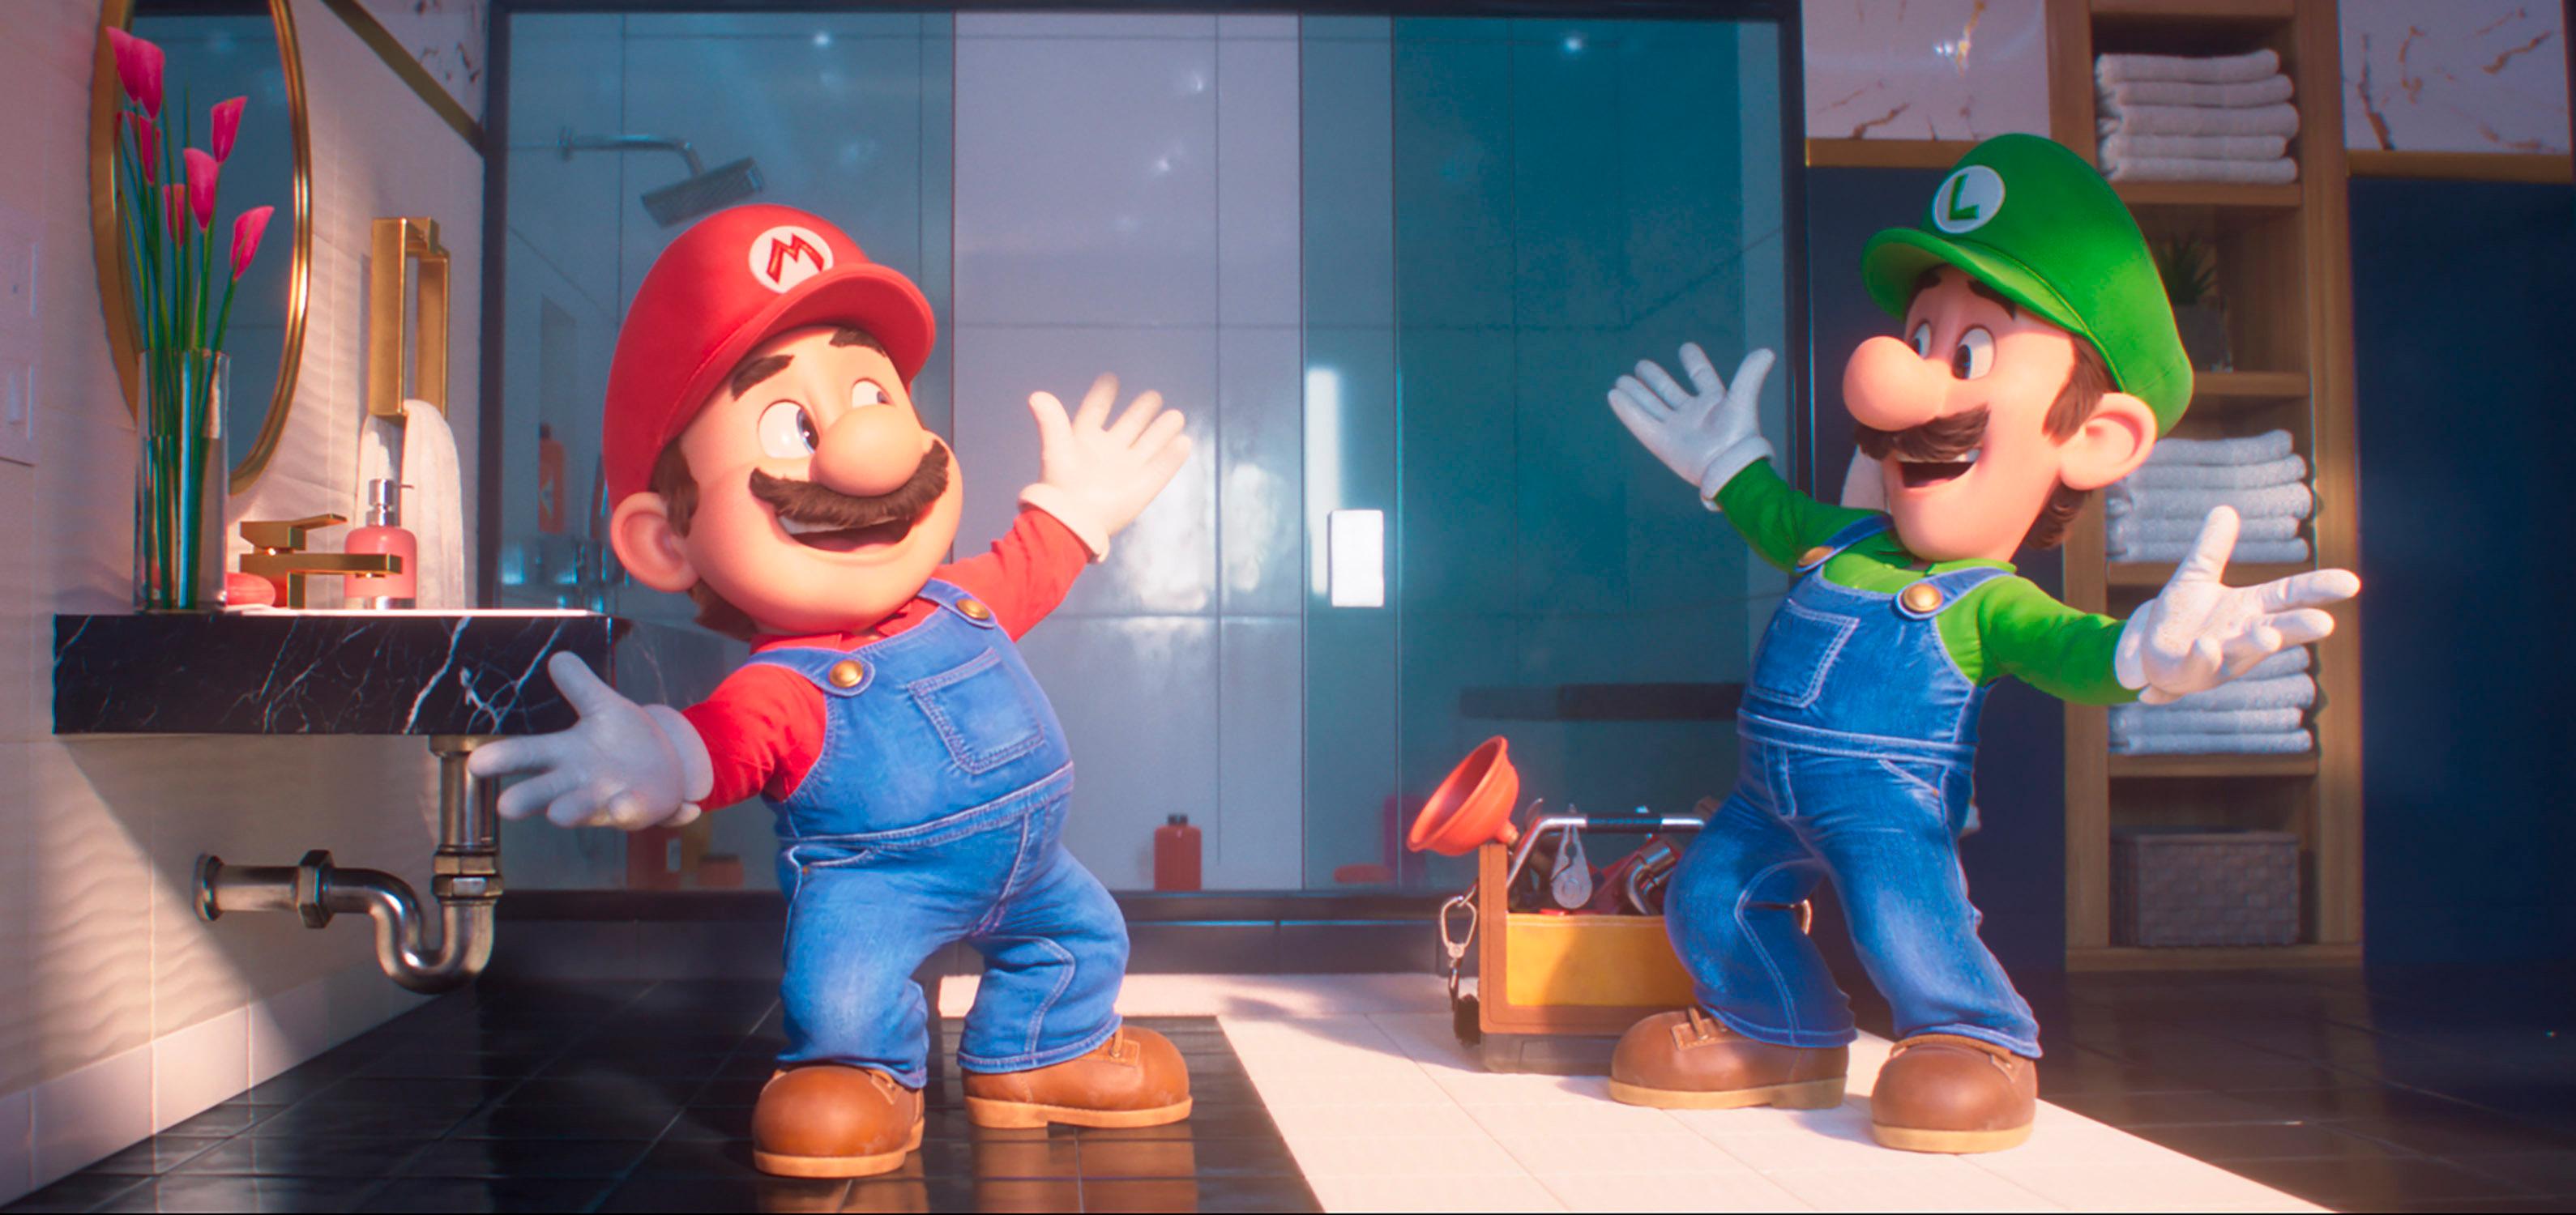 Homem-Formiga 3 é ultrapassado por filme do Mario na bilheteria